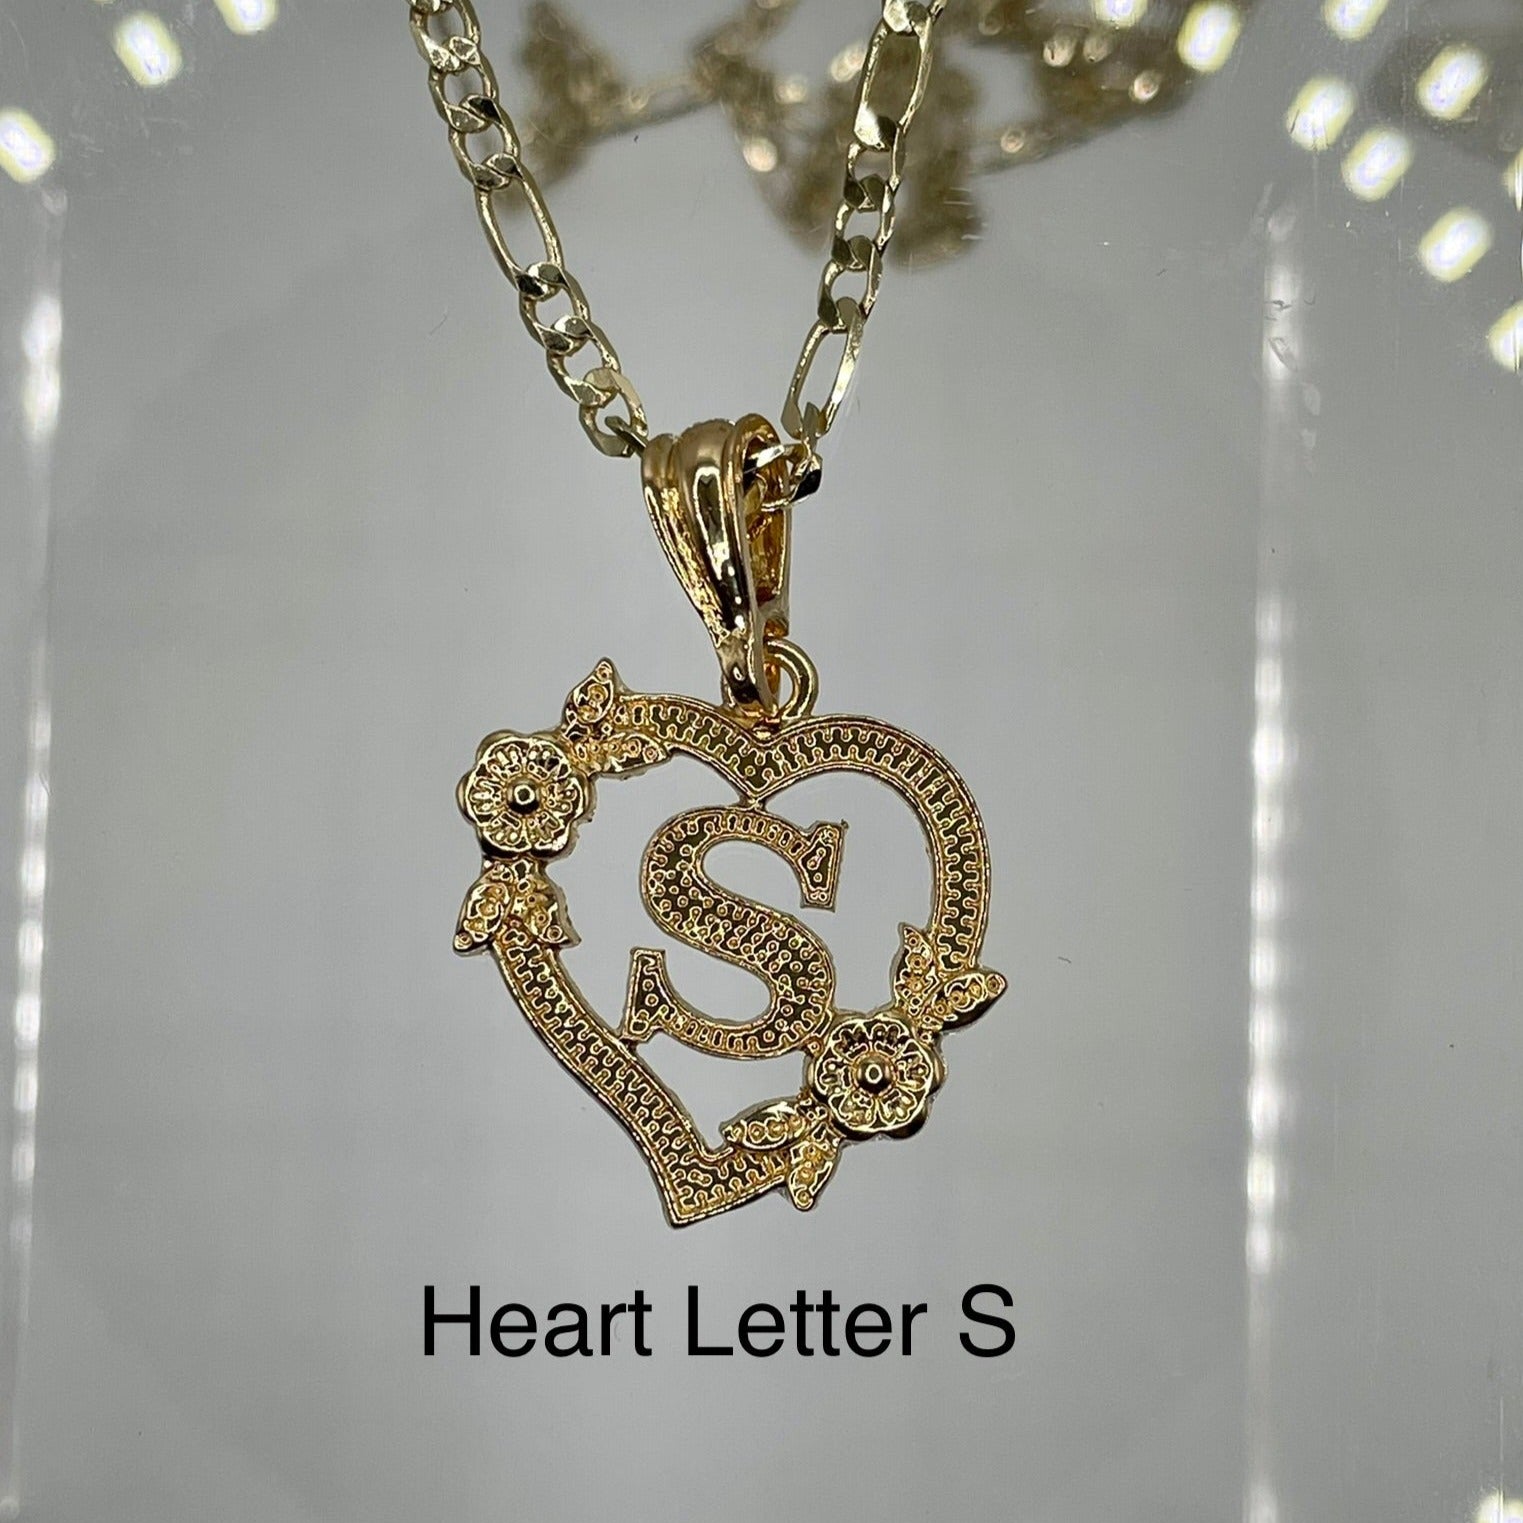 Heart letter S pendant. Gold heart pendant. Letter pendants.